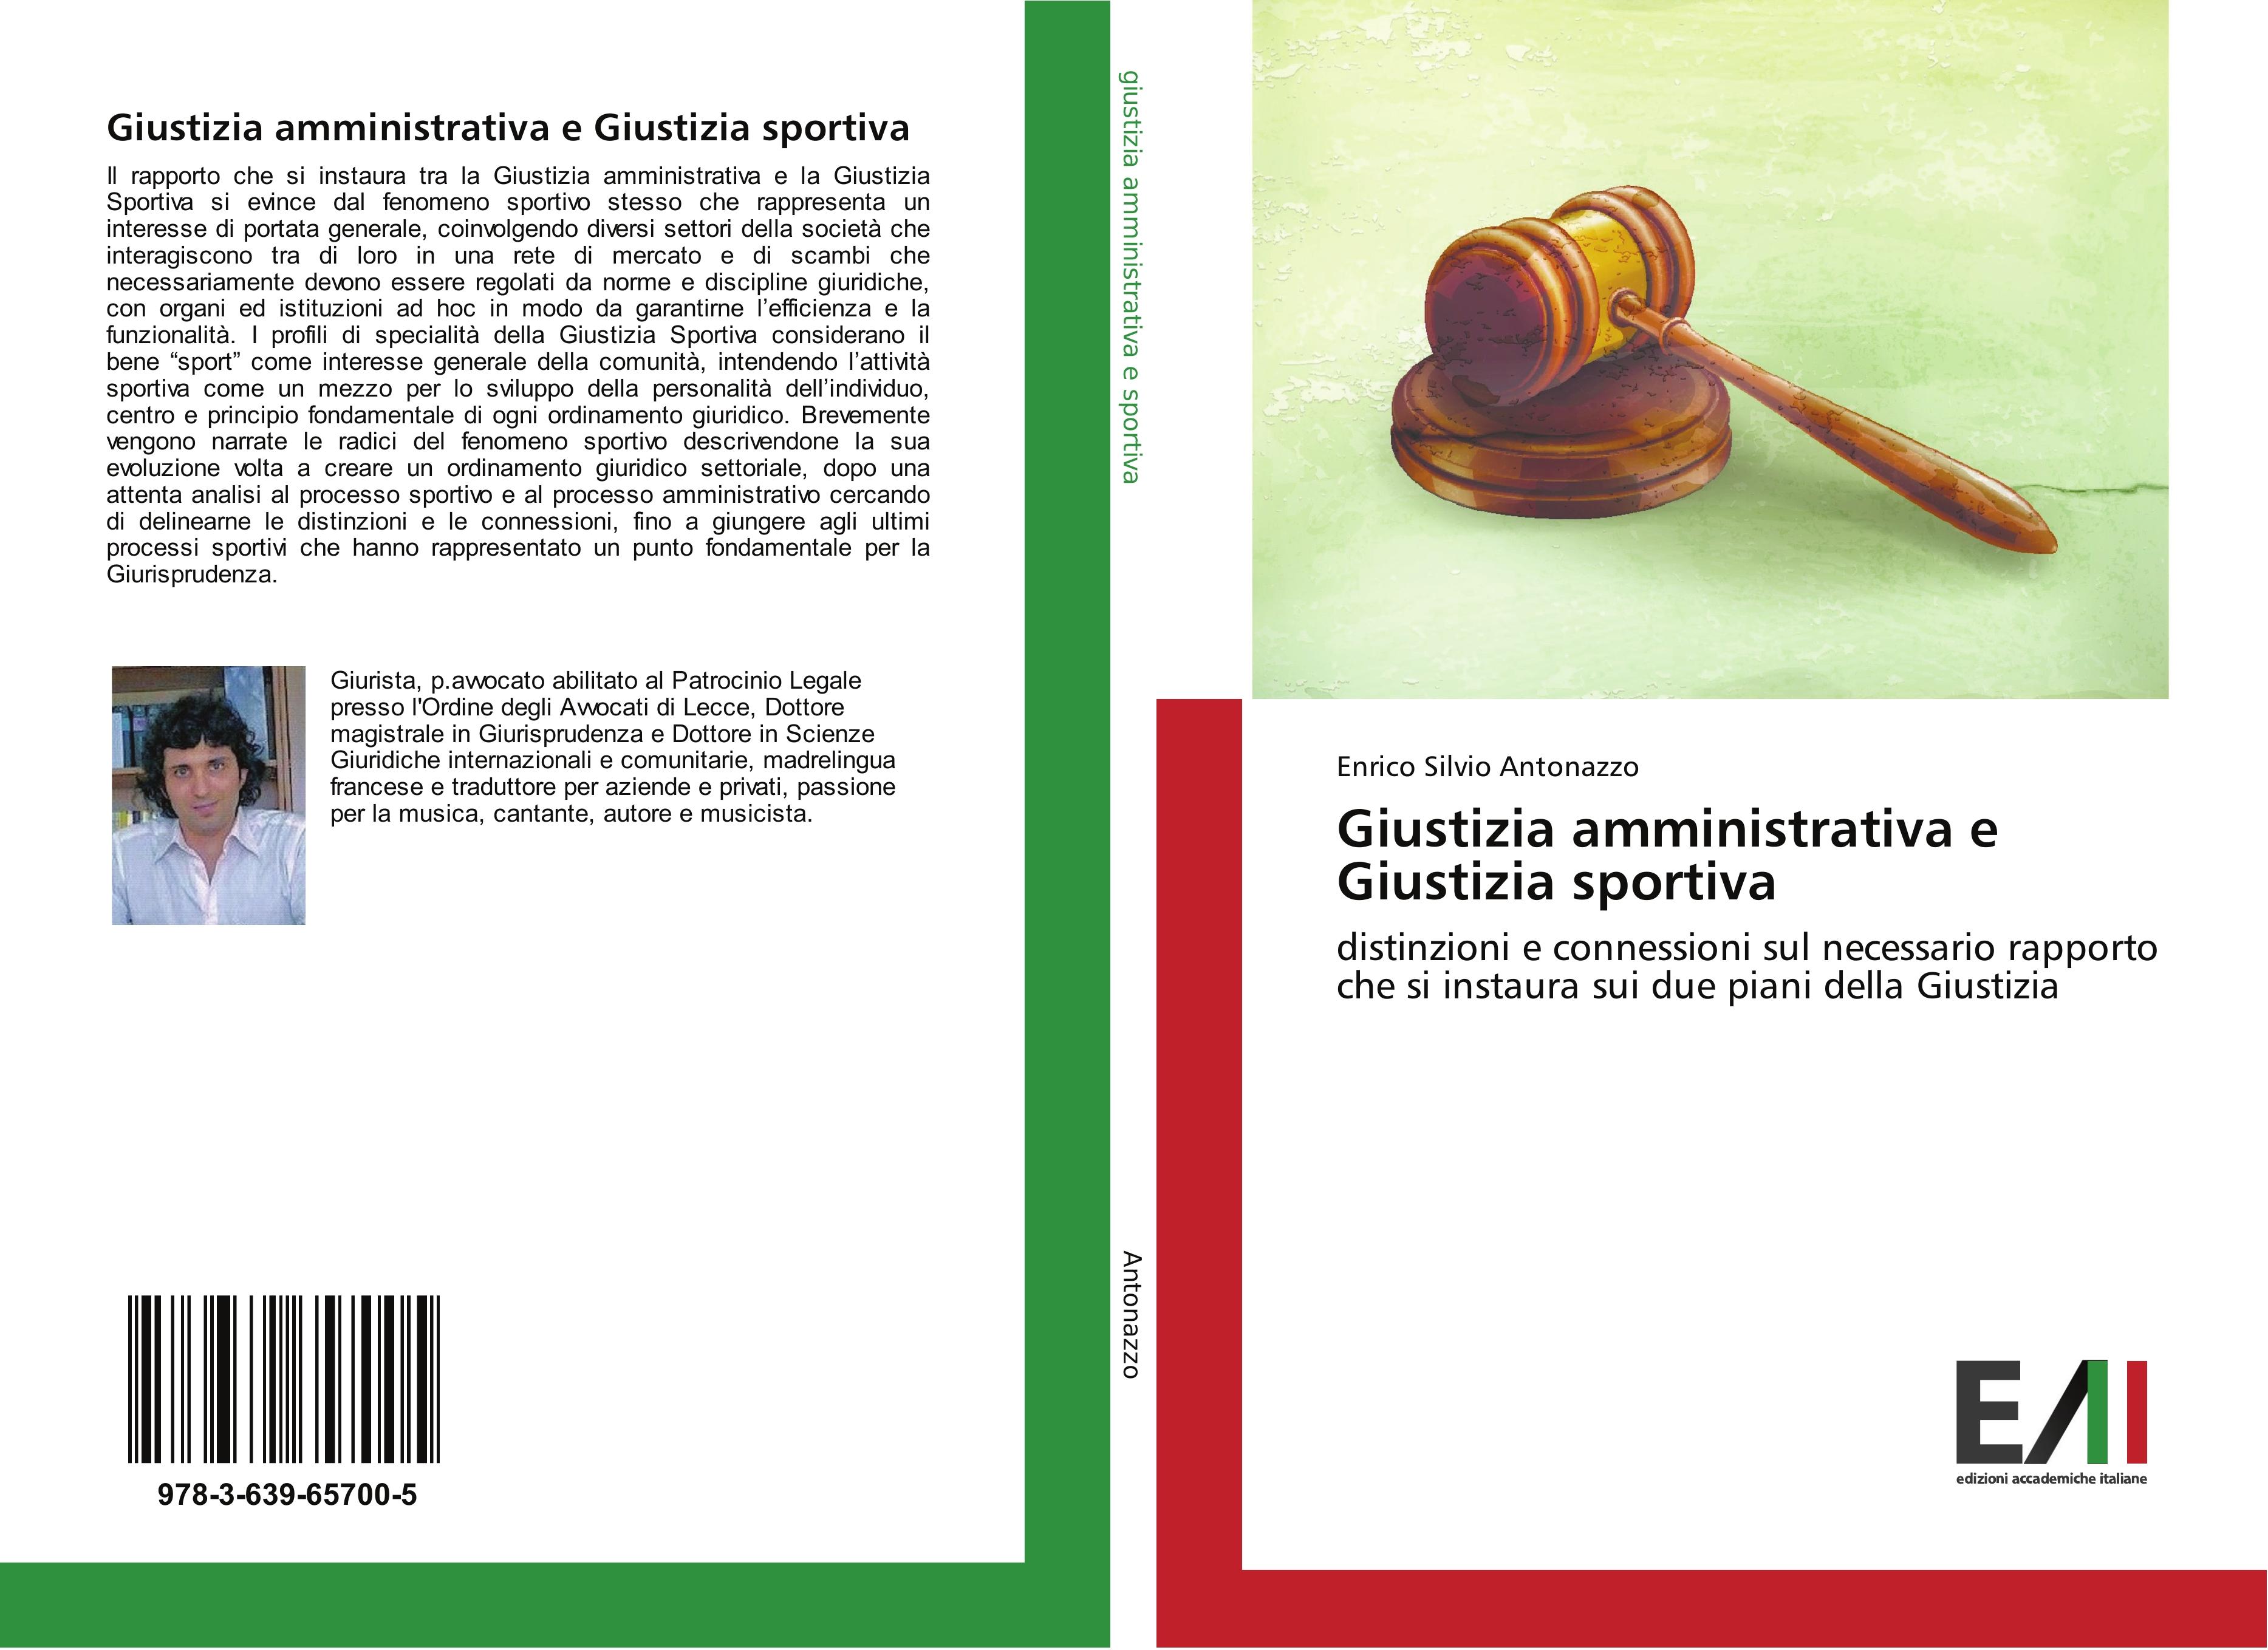 Giustizia amministrativa e Giustizia sportiva - Enrico Silvio Antonazzo